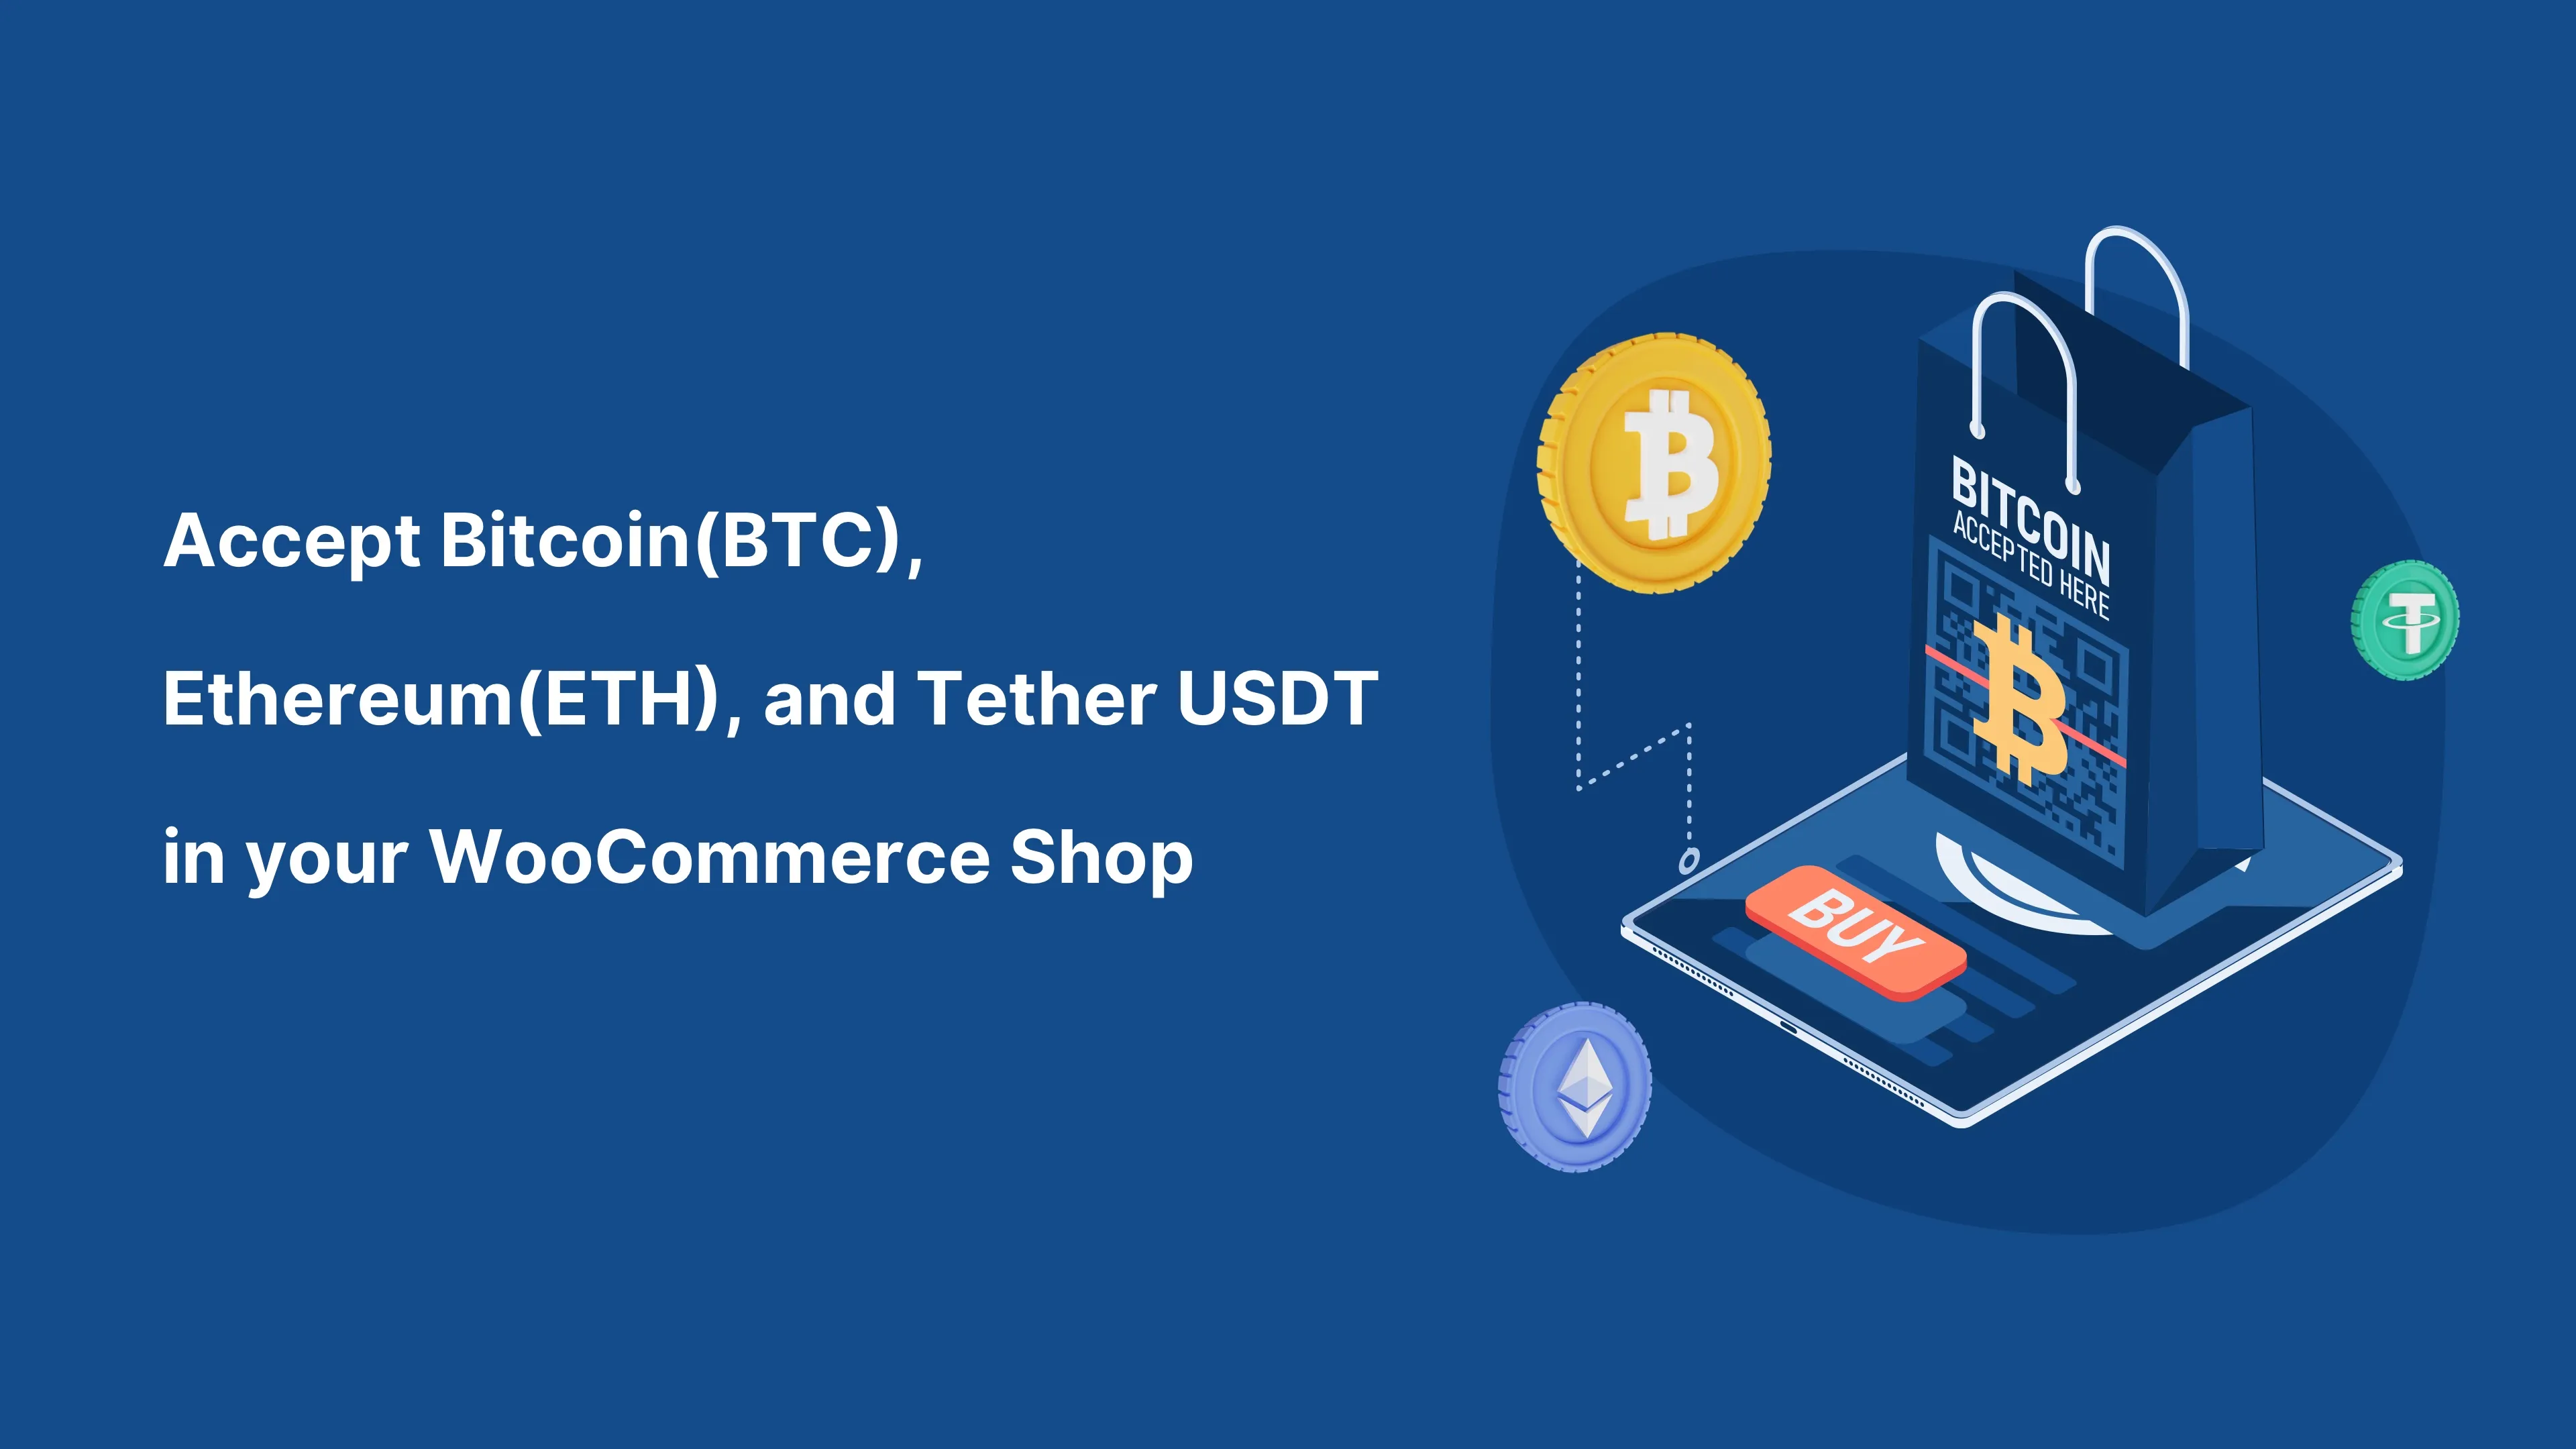 Prijmite bitcoiny (BTC) a akúkoľvek kryptomenu vo svojom obchode WooCommerce